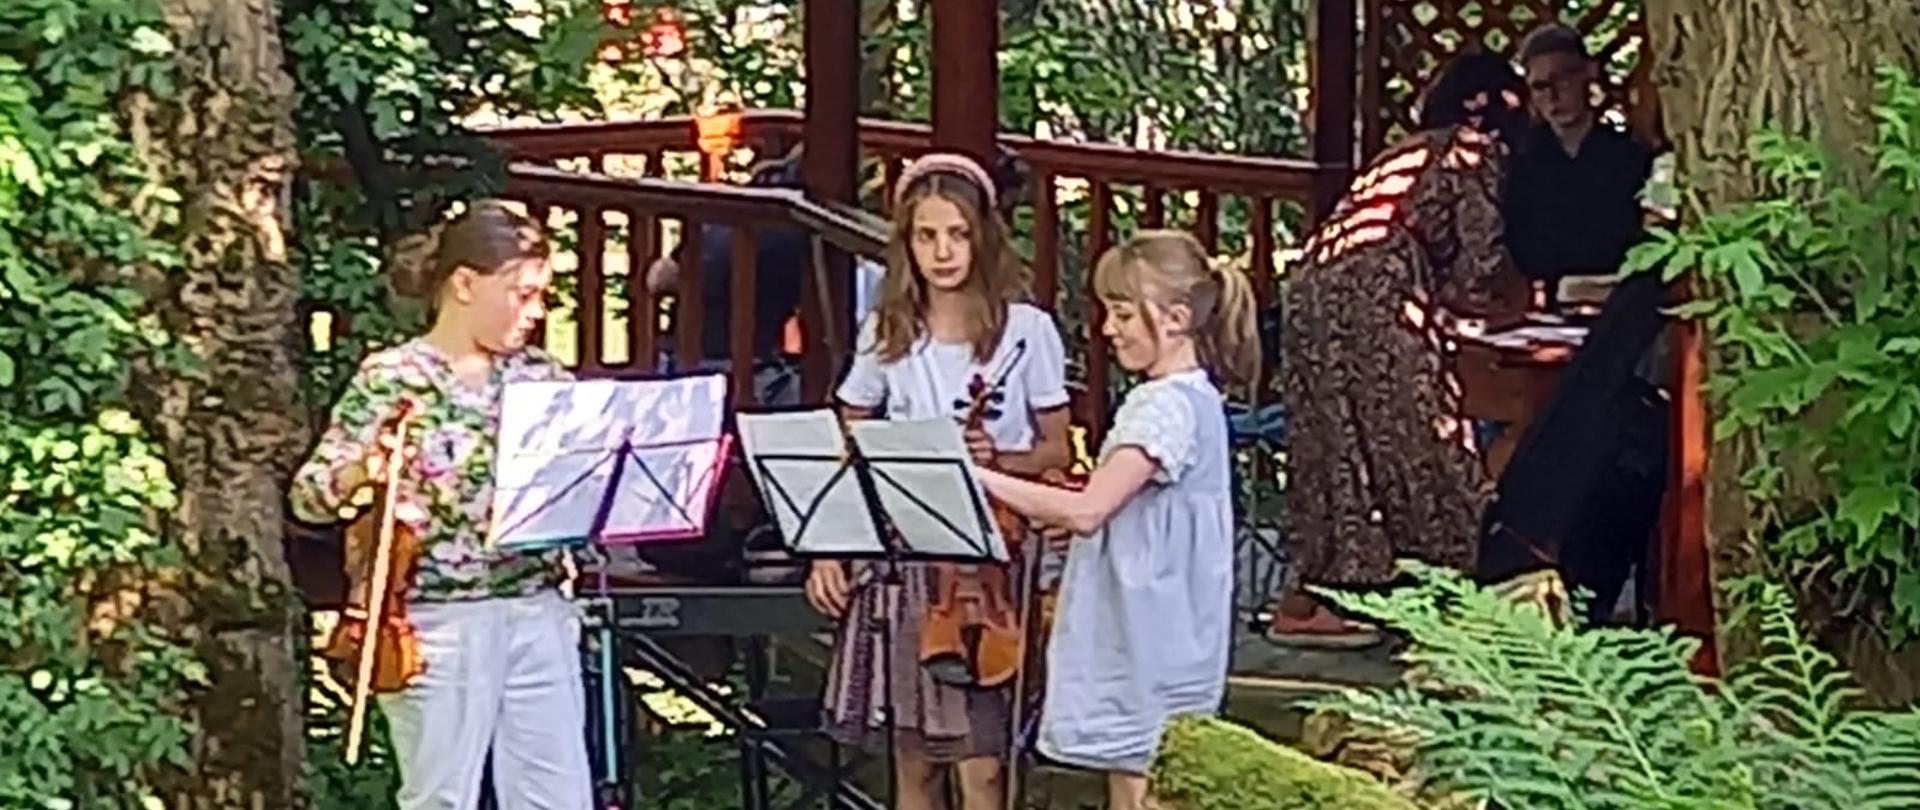 Zdjęcie w ogrodzie. Na środku gra trio skrzypcowe spoglądając na nuty umieszczone na dwóch pulpitach, za nimi keybord. Następnie między drzewami drewniana altanka, w której są uczestnicy koncertu